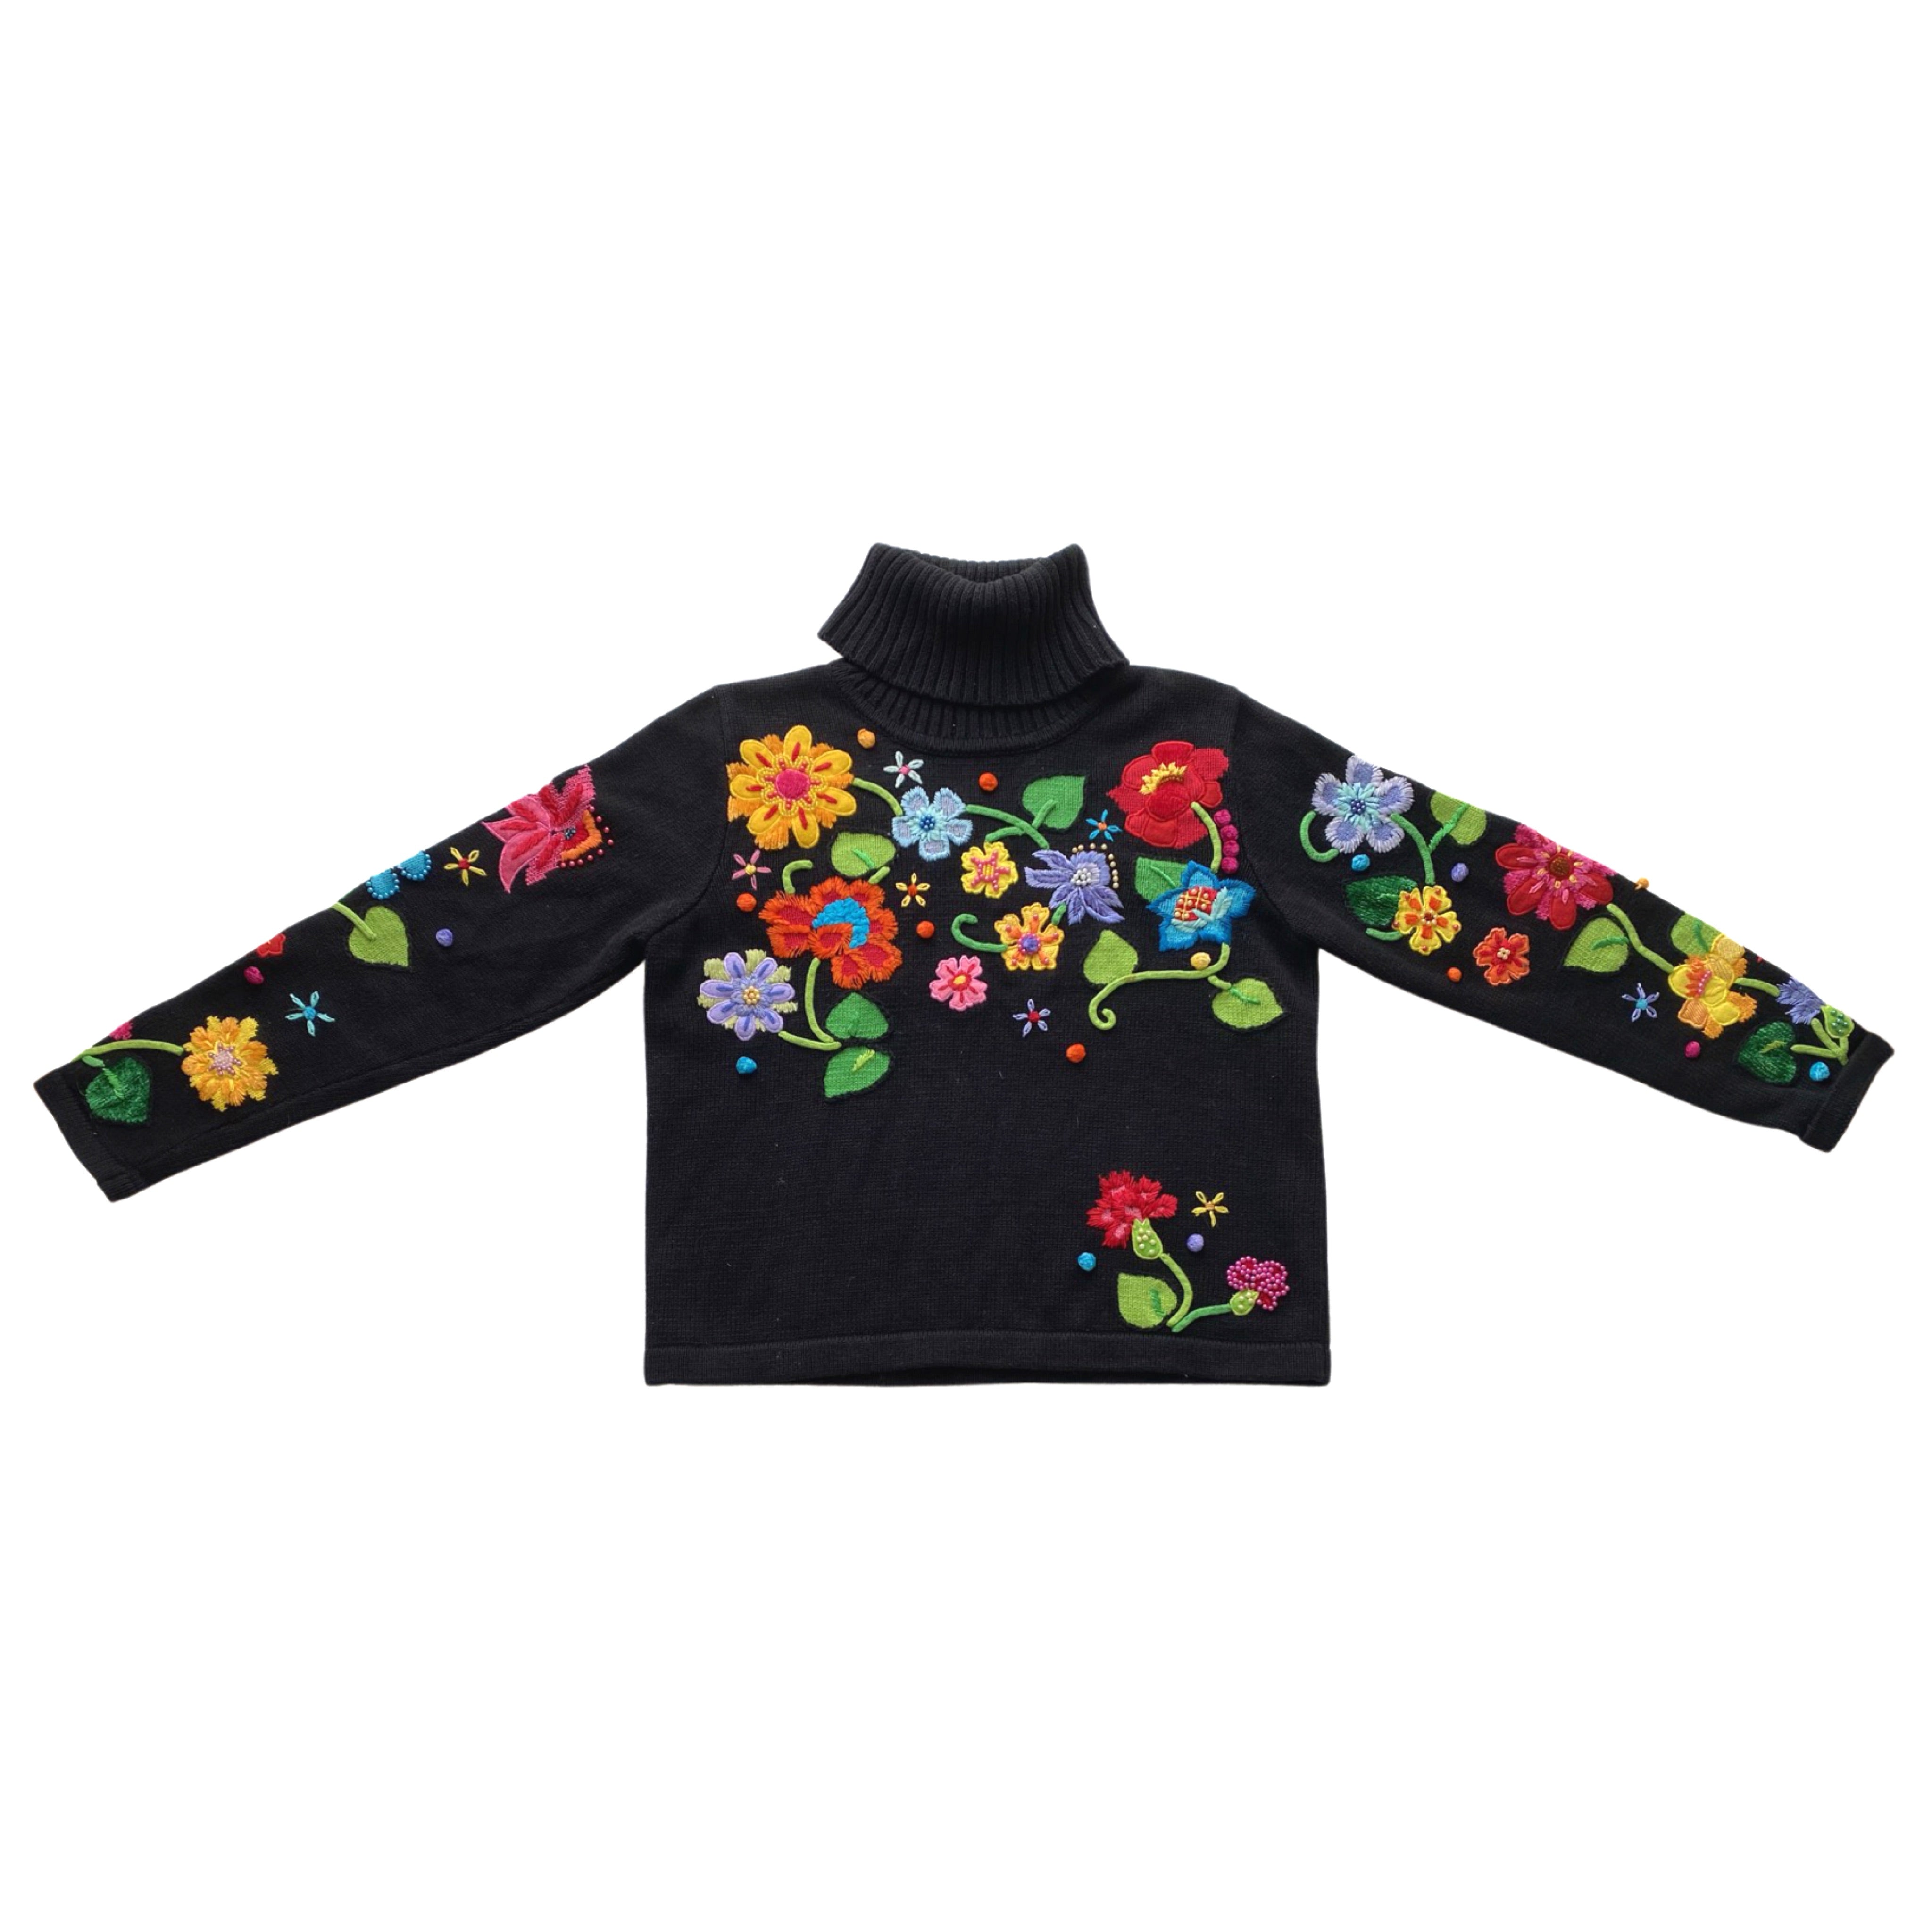 Vintage Floral Turtleneck Sweater